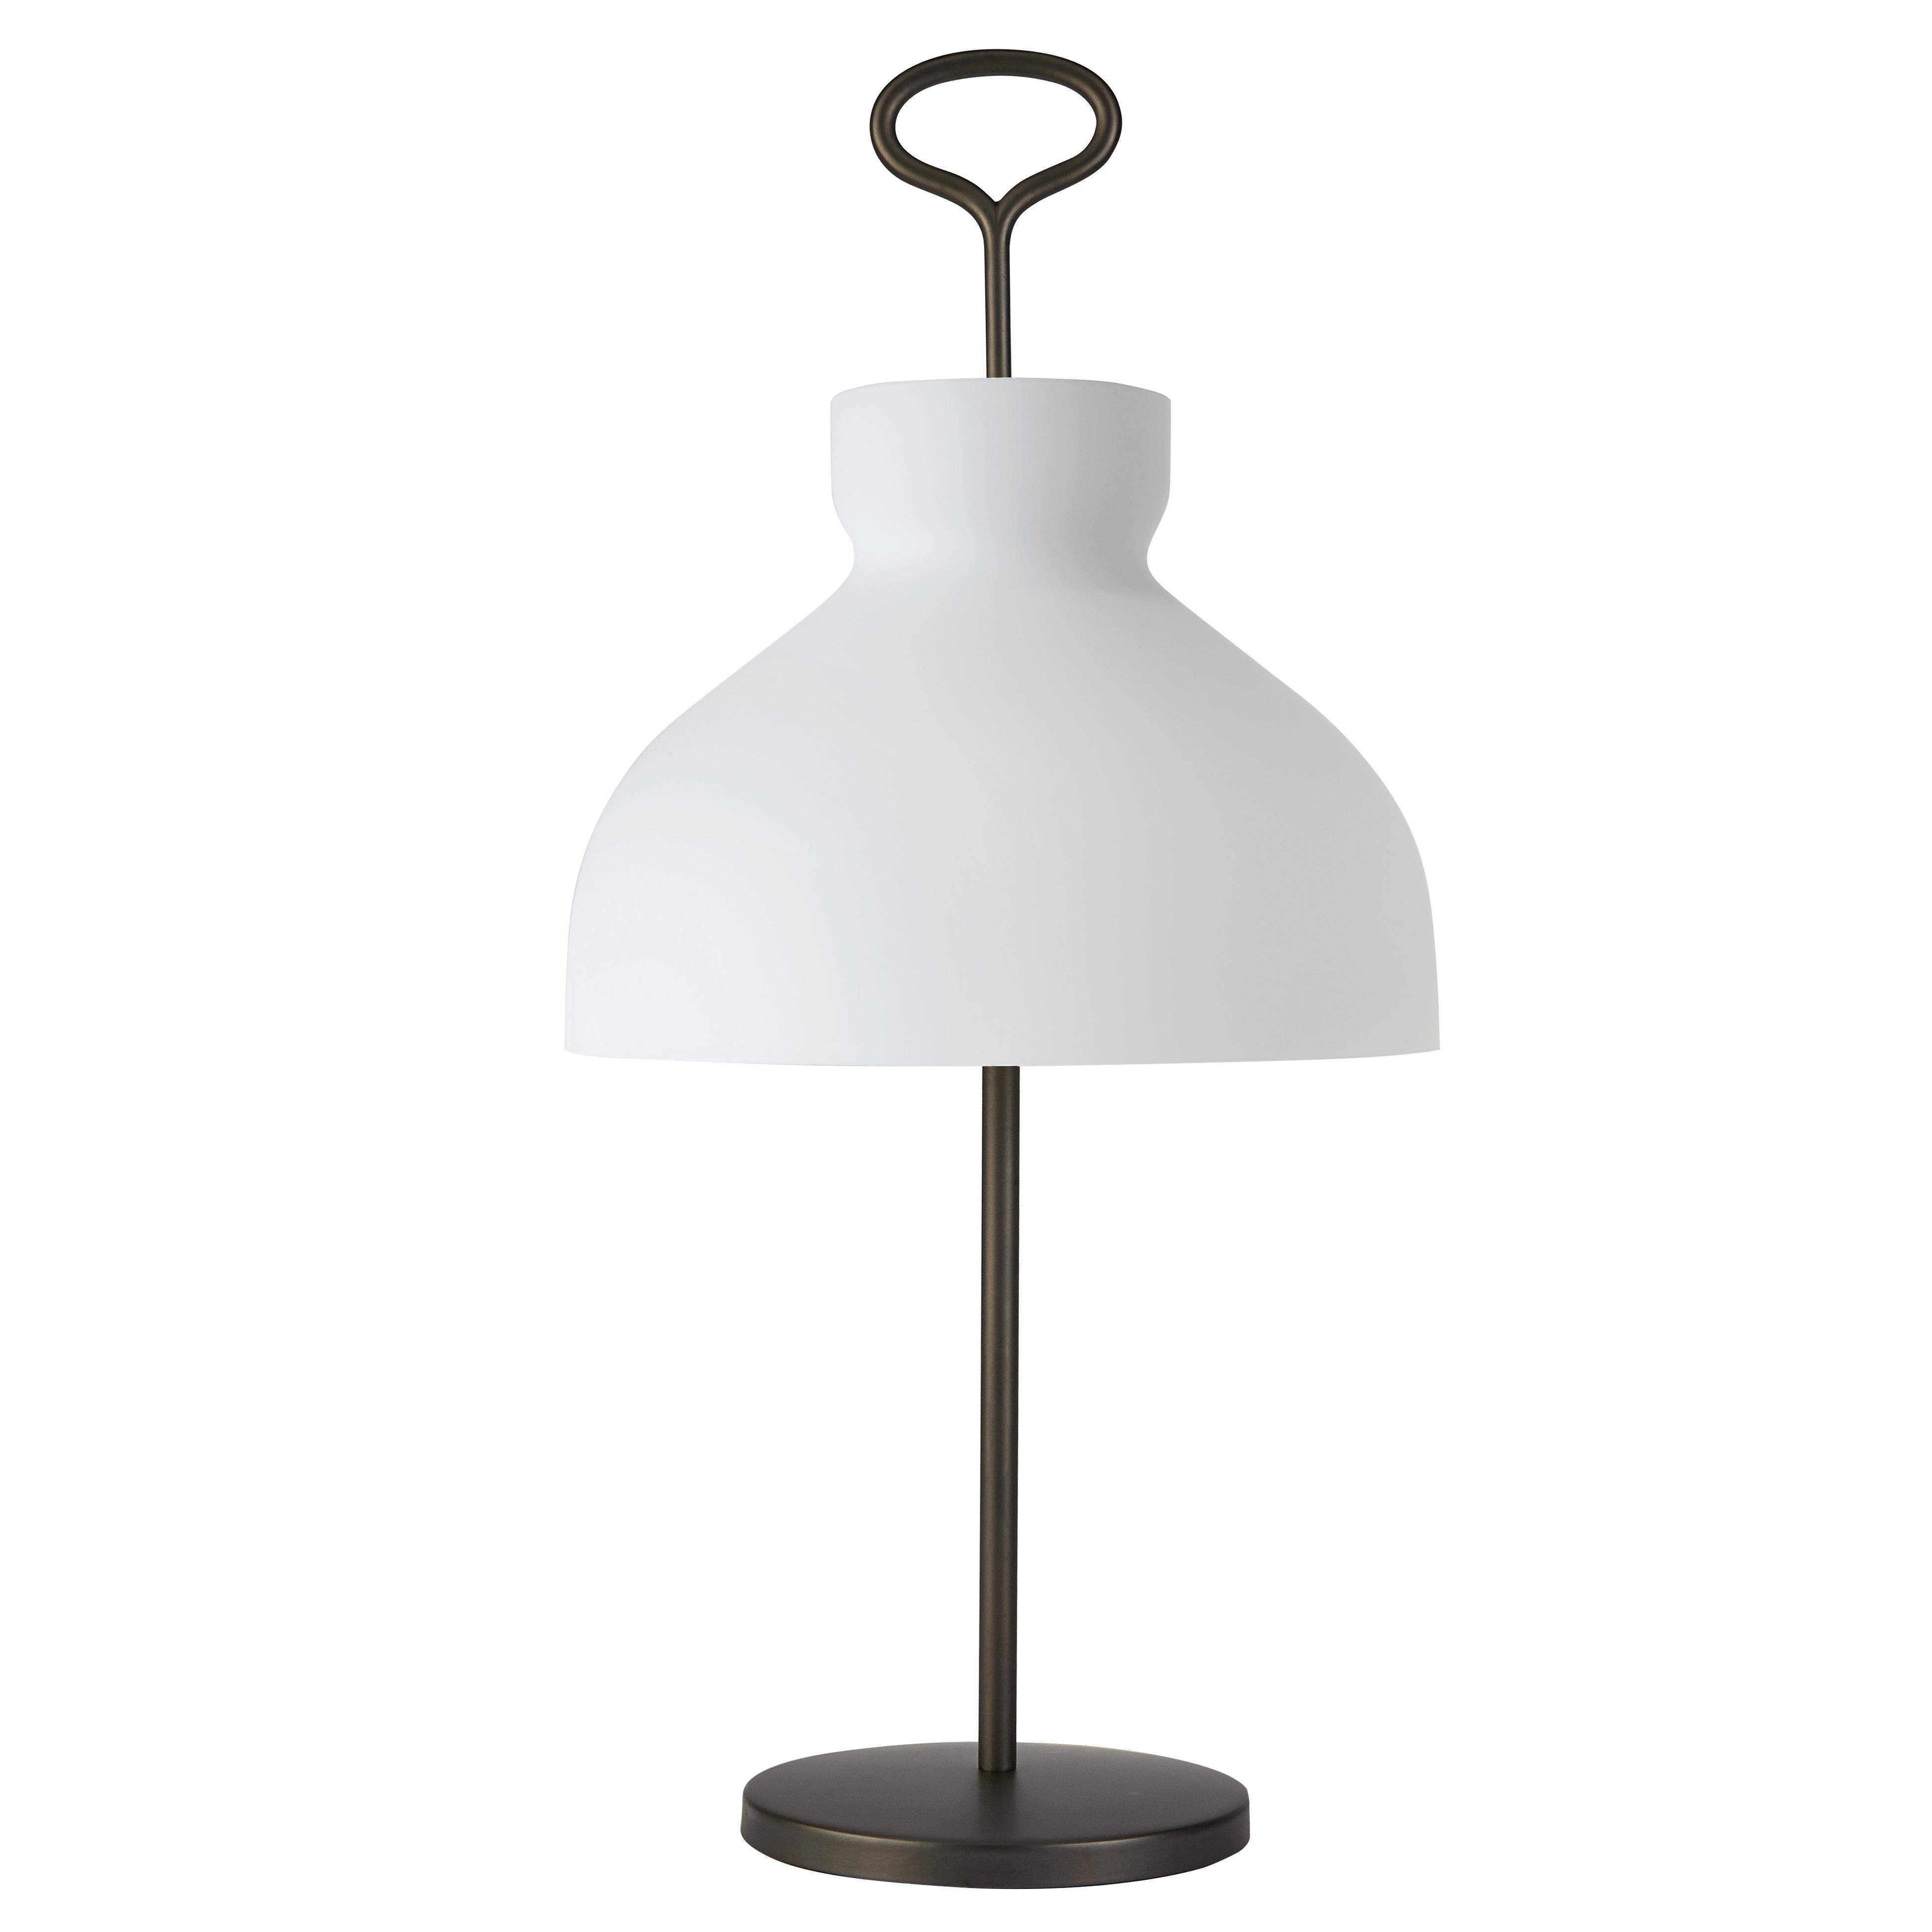 Large Ignazio Gardella 'Arenzano' Table Lamp in Brass and Glass for Tato Italia For Sale 4